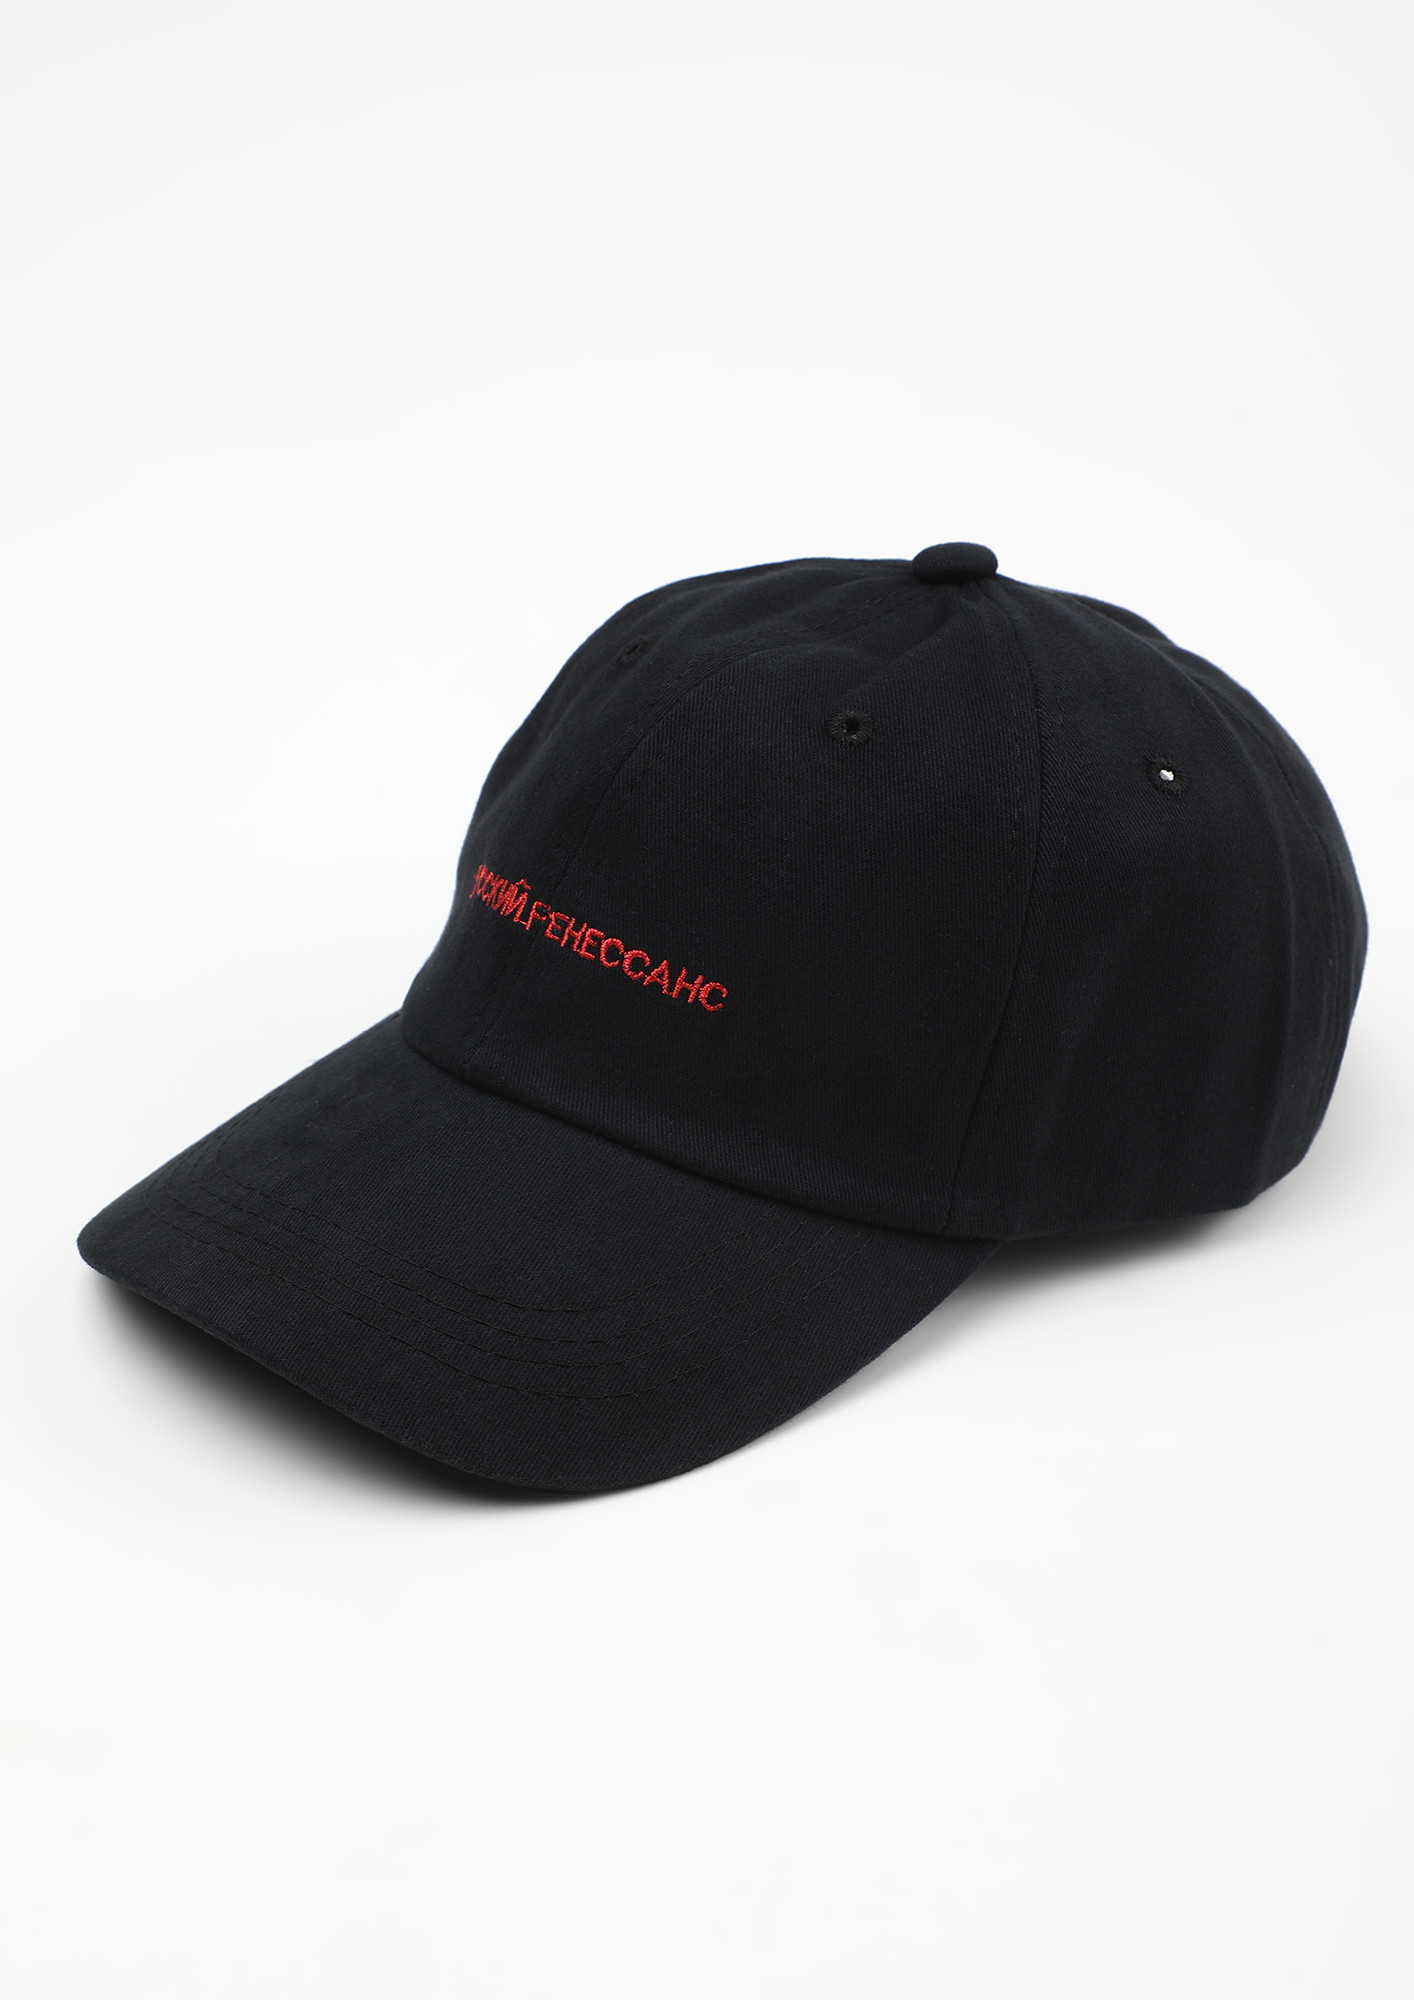 SCRIBBLE CAREFREE BLACK CAP